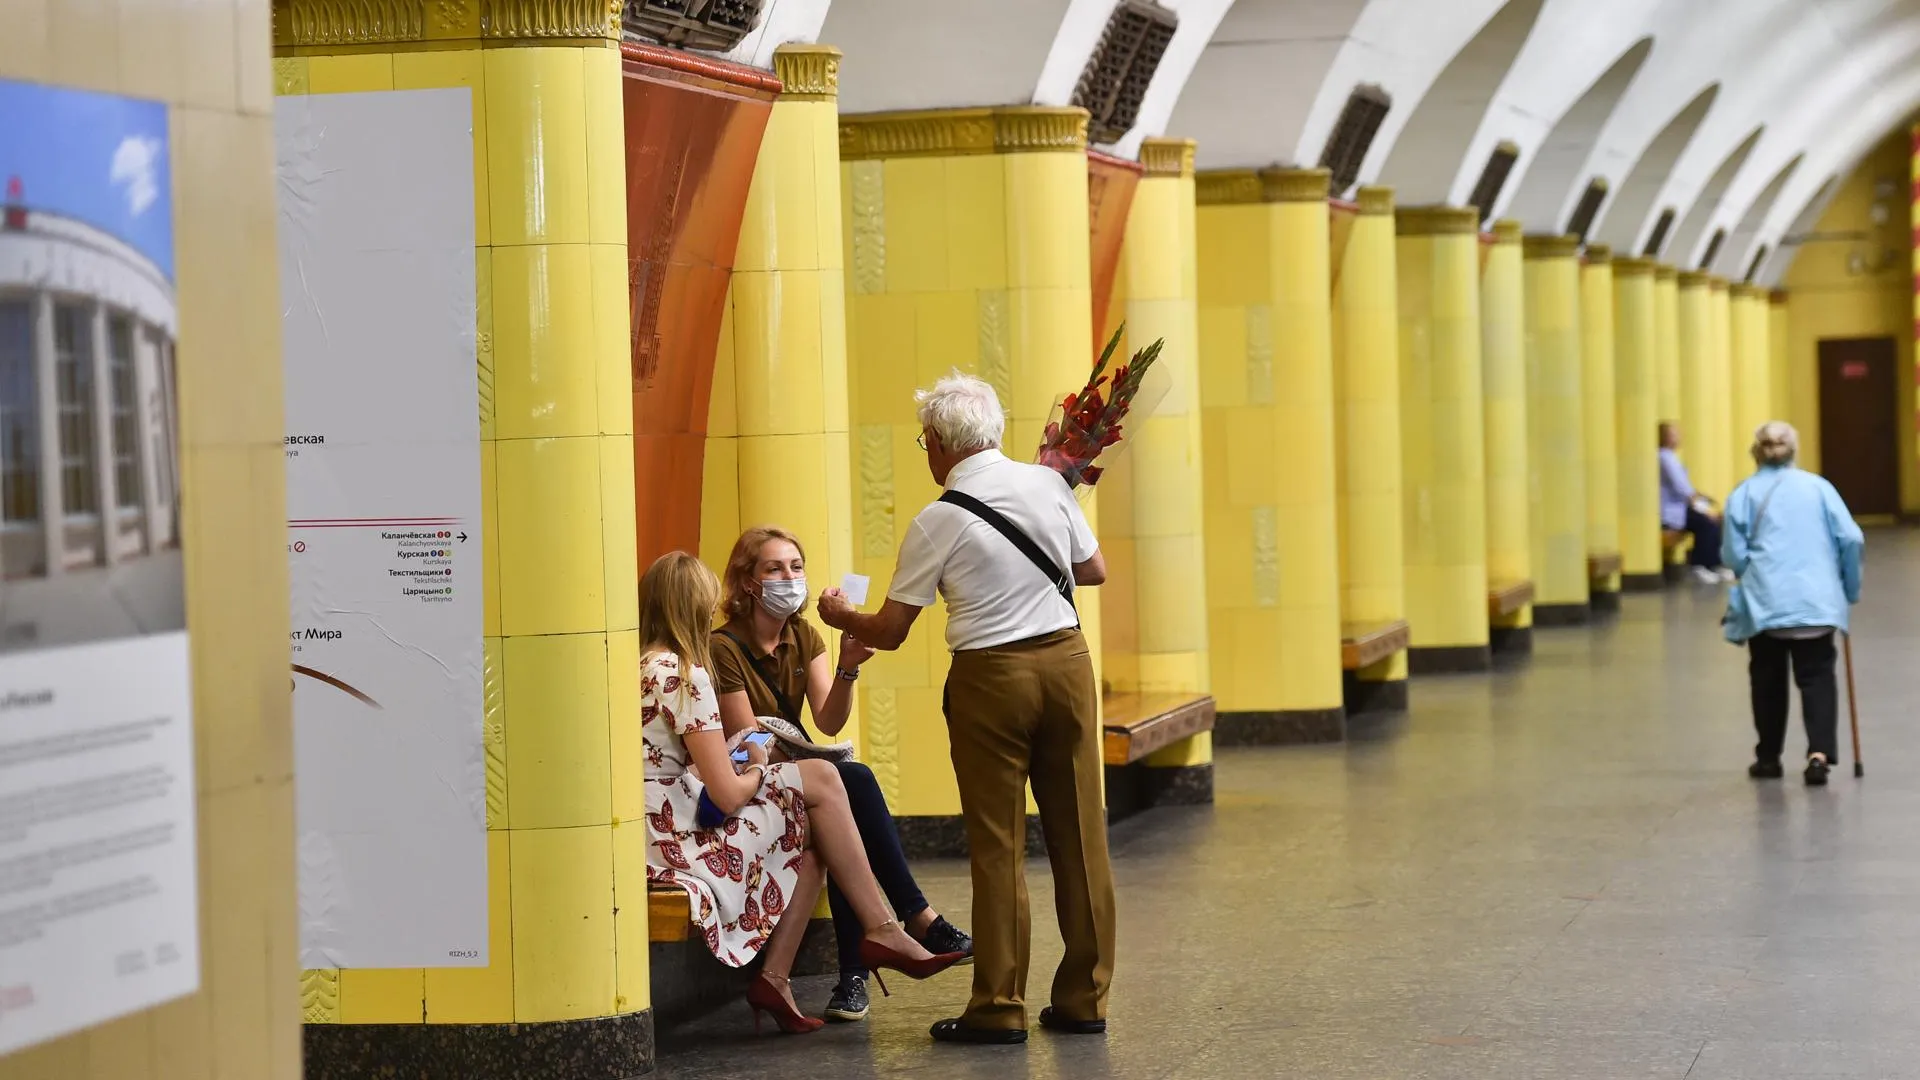 Отделка «под янтарь», цветы и рэкет: интересные факты о метро «Рижская» в Москве